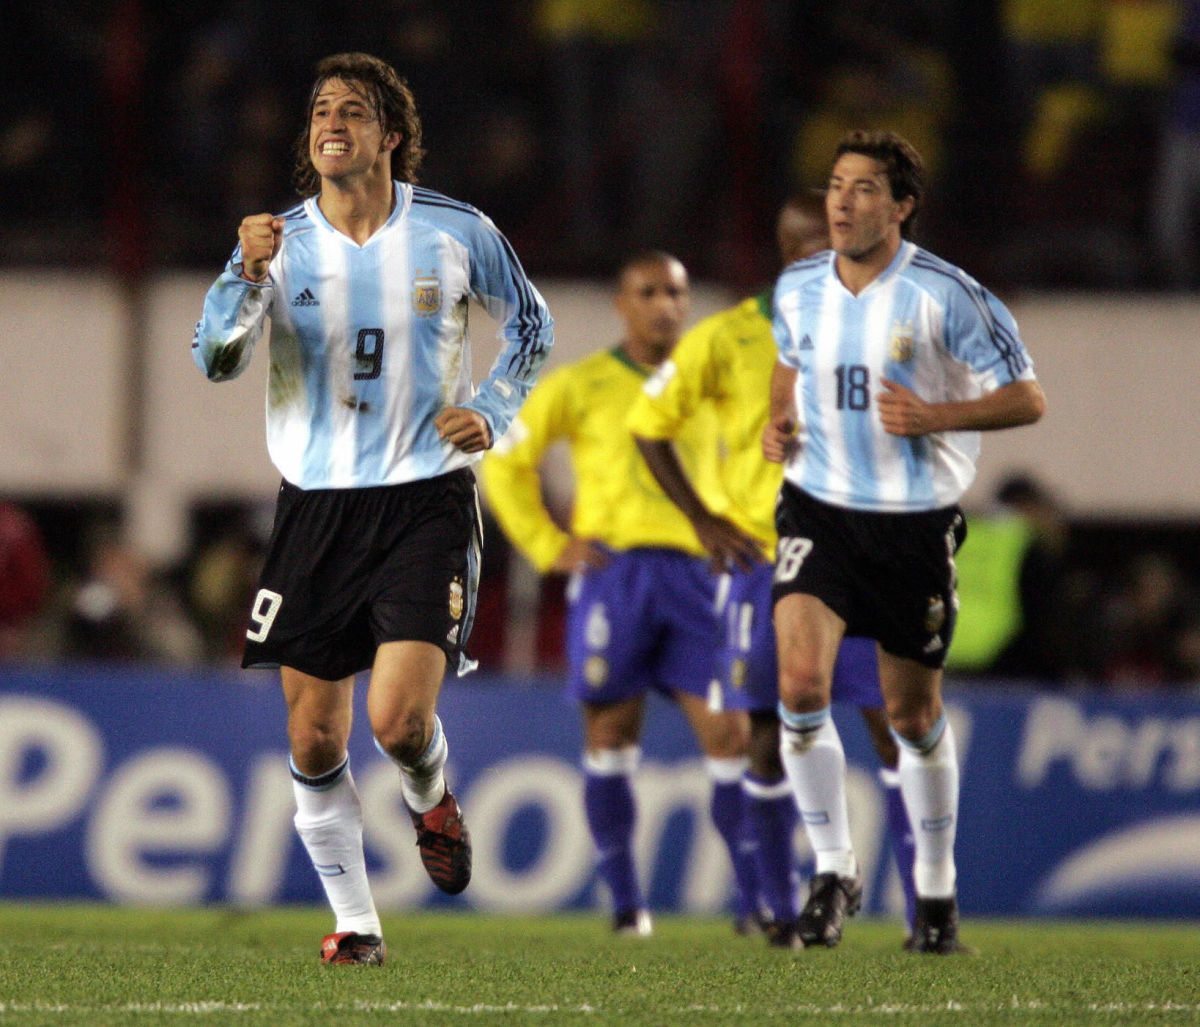 argentine-soccer-striker-hernan-crespo-5b3a76c9f7b09dfc7100000e.jpg